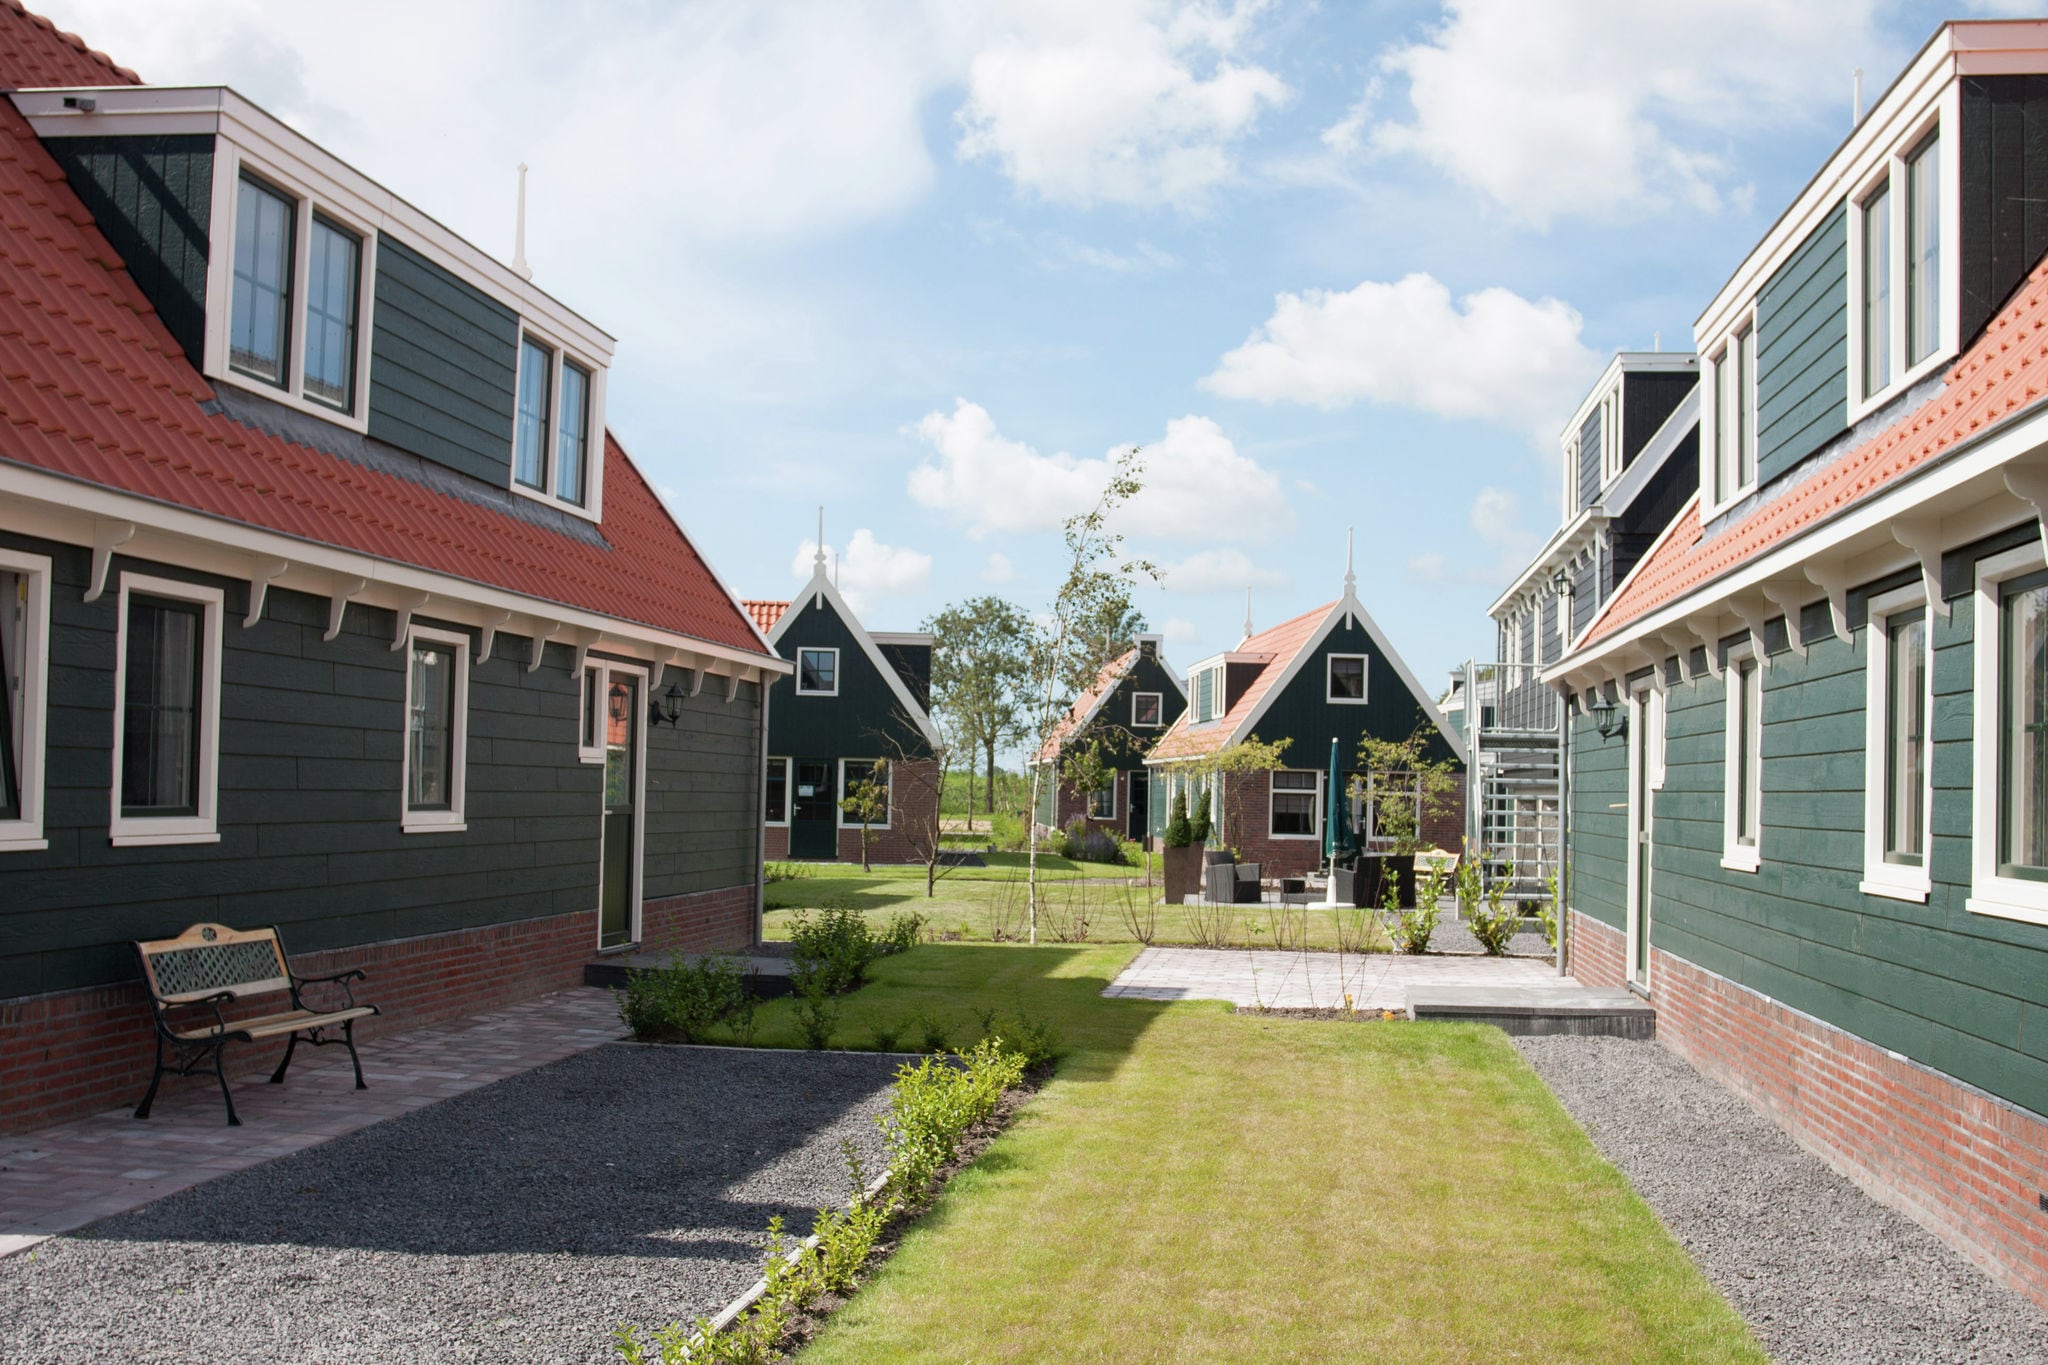 Maison de vacances de Zaanse à 15 km d'Alkmaar